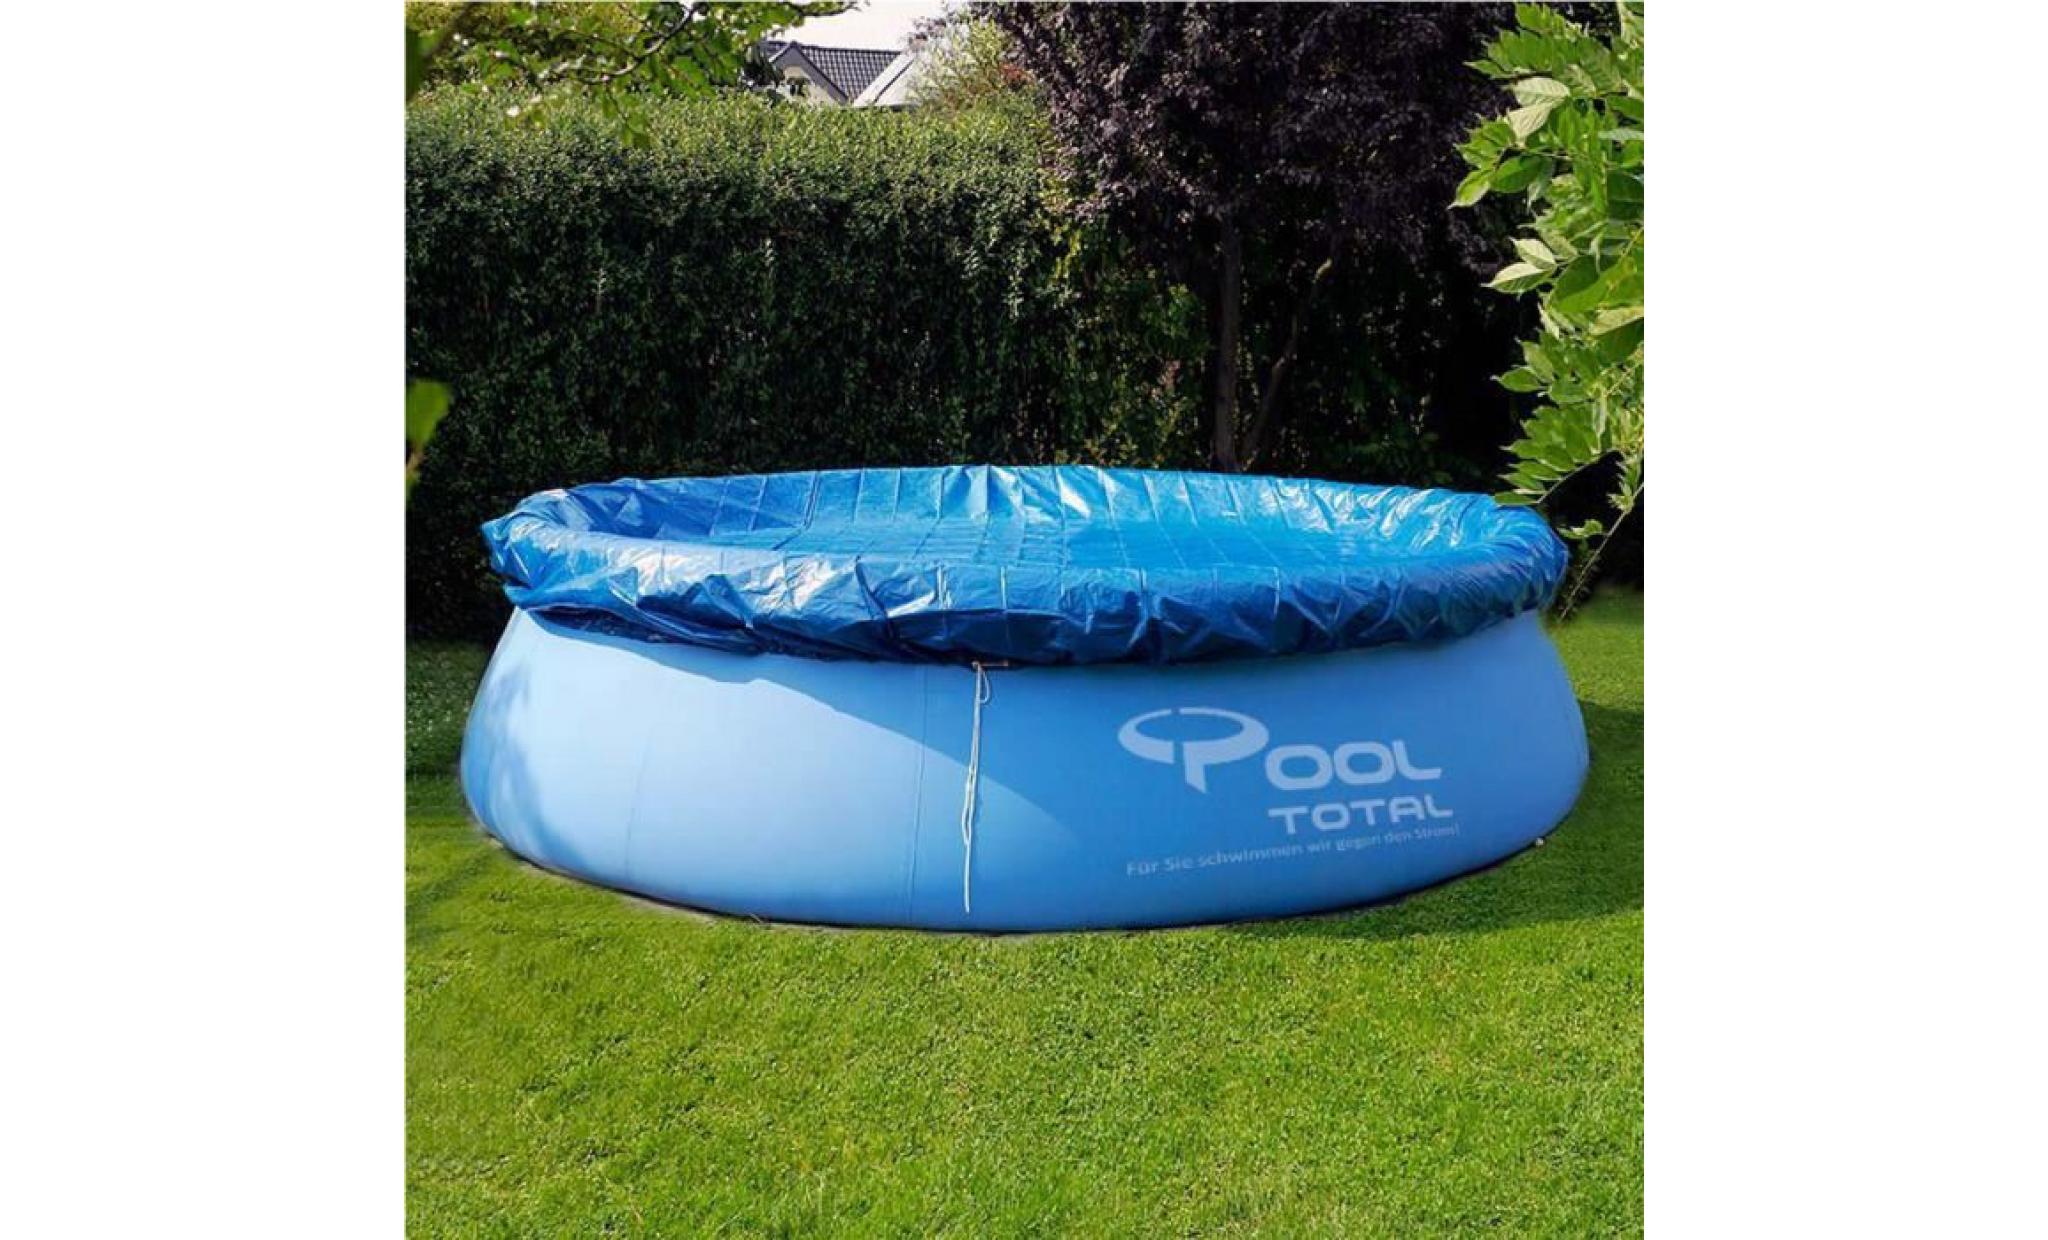 tempsa bache couverture ronde pour piscine jardin(sans piscine ) bleu ou noir (couleur aléatoire) 366cm pas cher